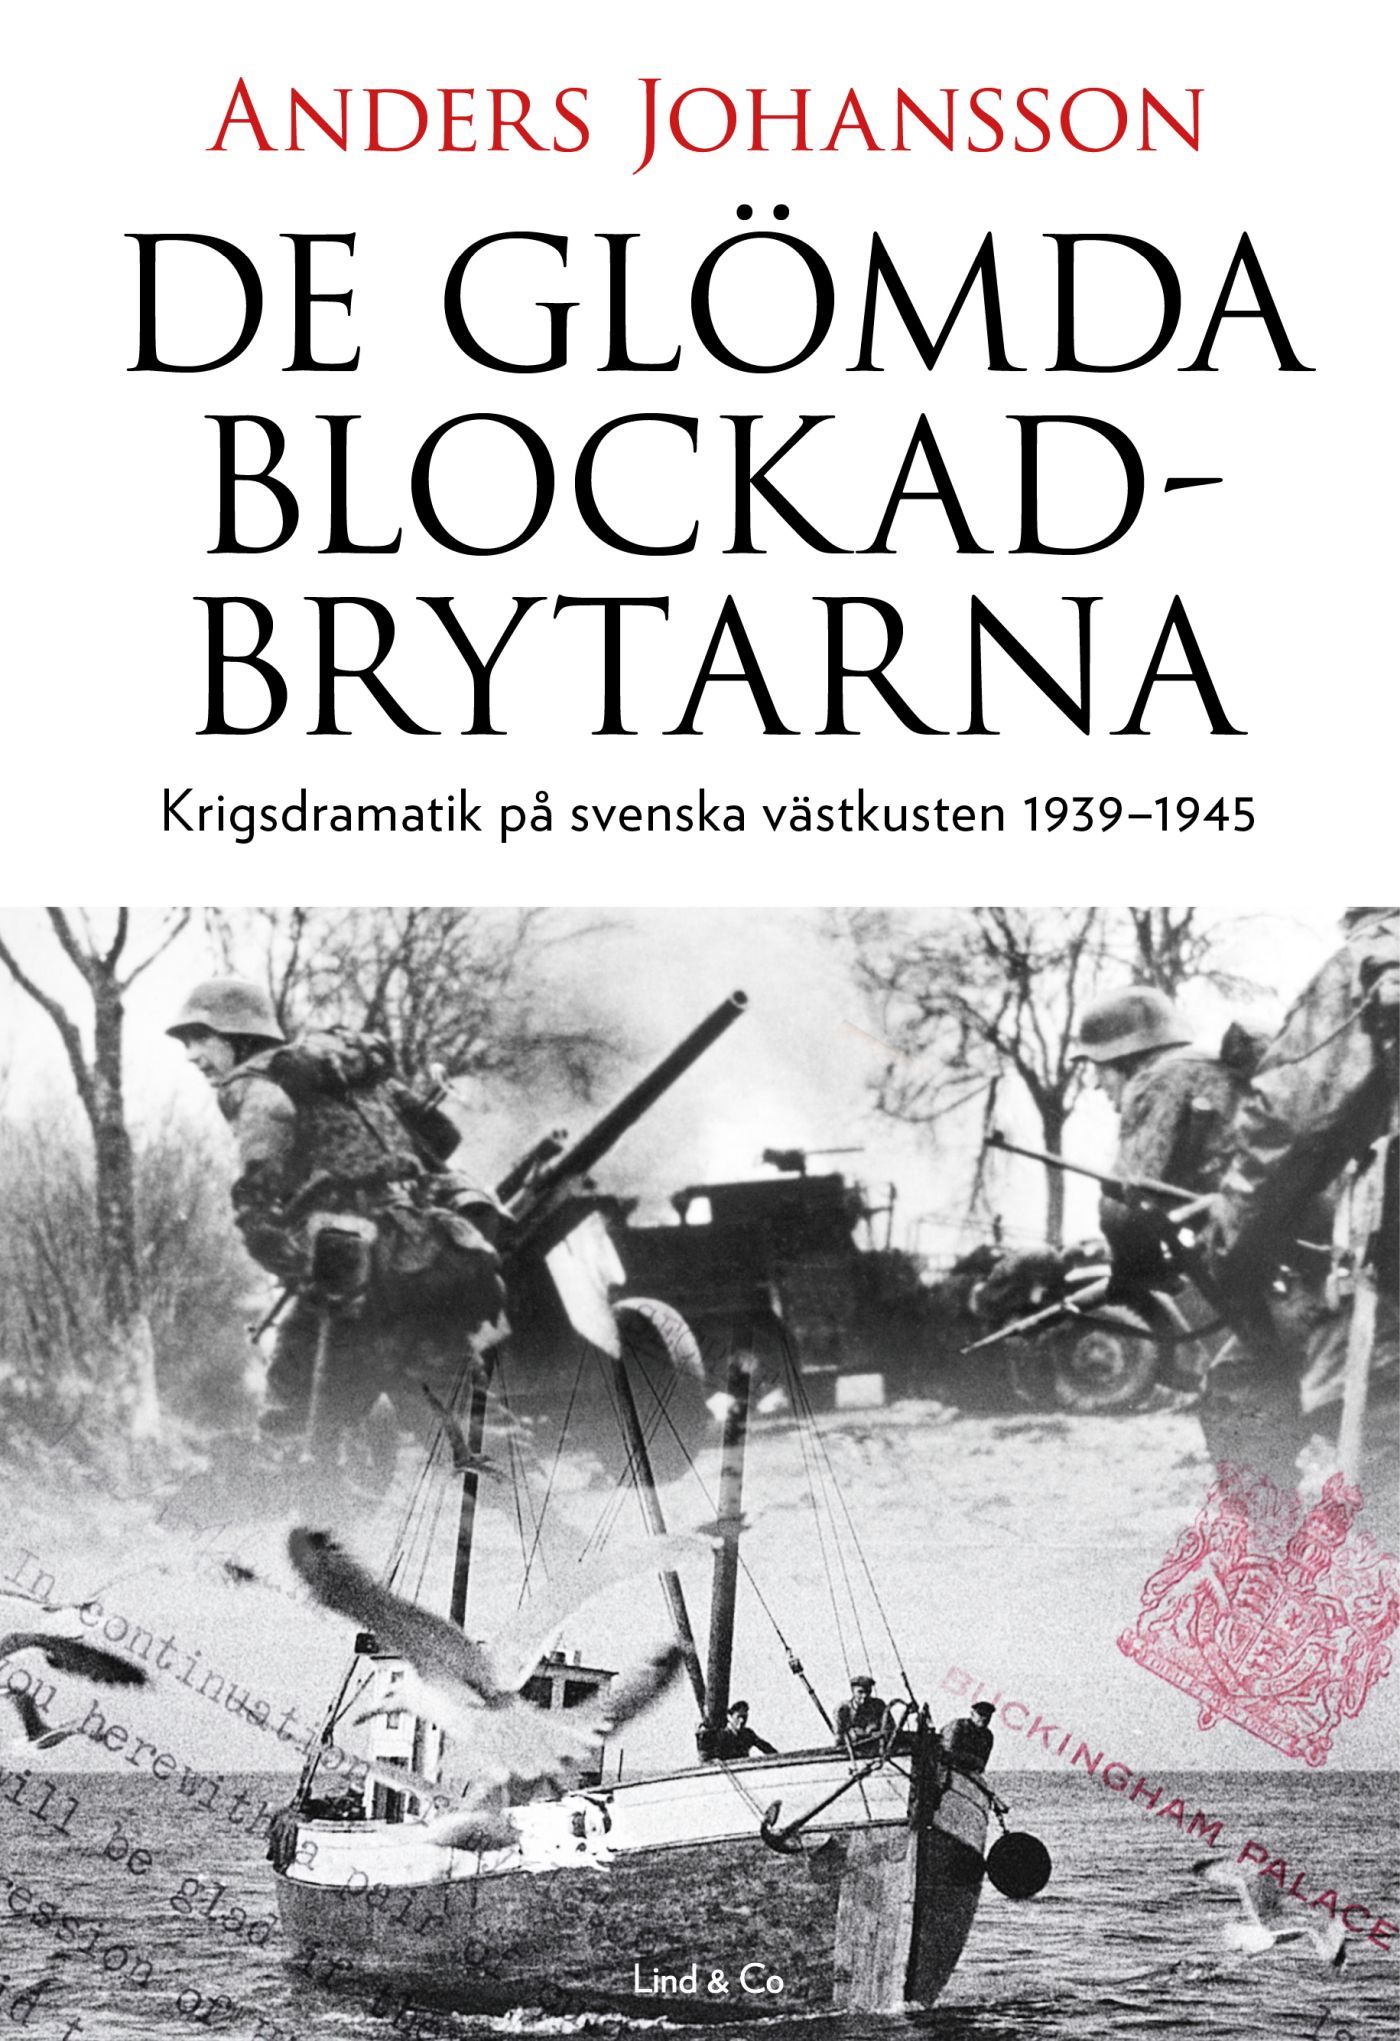 De glömda blockadbrytarna : Krigsdramatik på svenska västkusten 1939-1945, e-bok av Anders Johansson